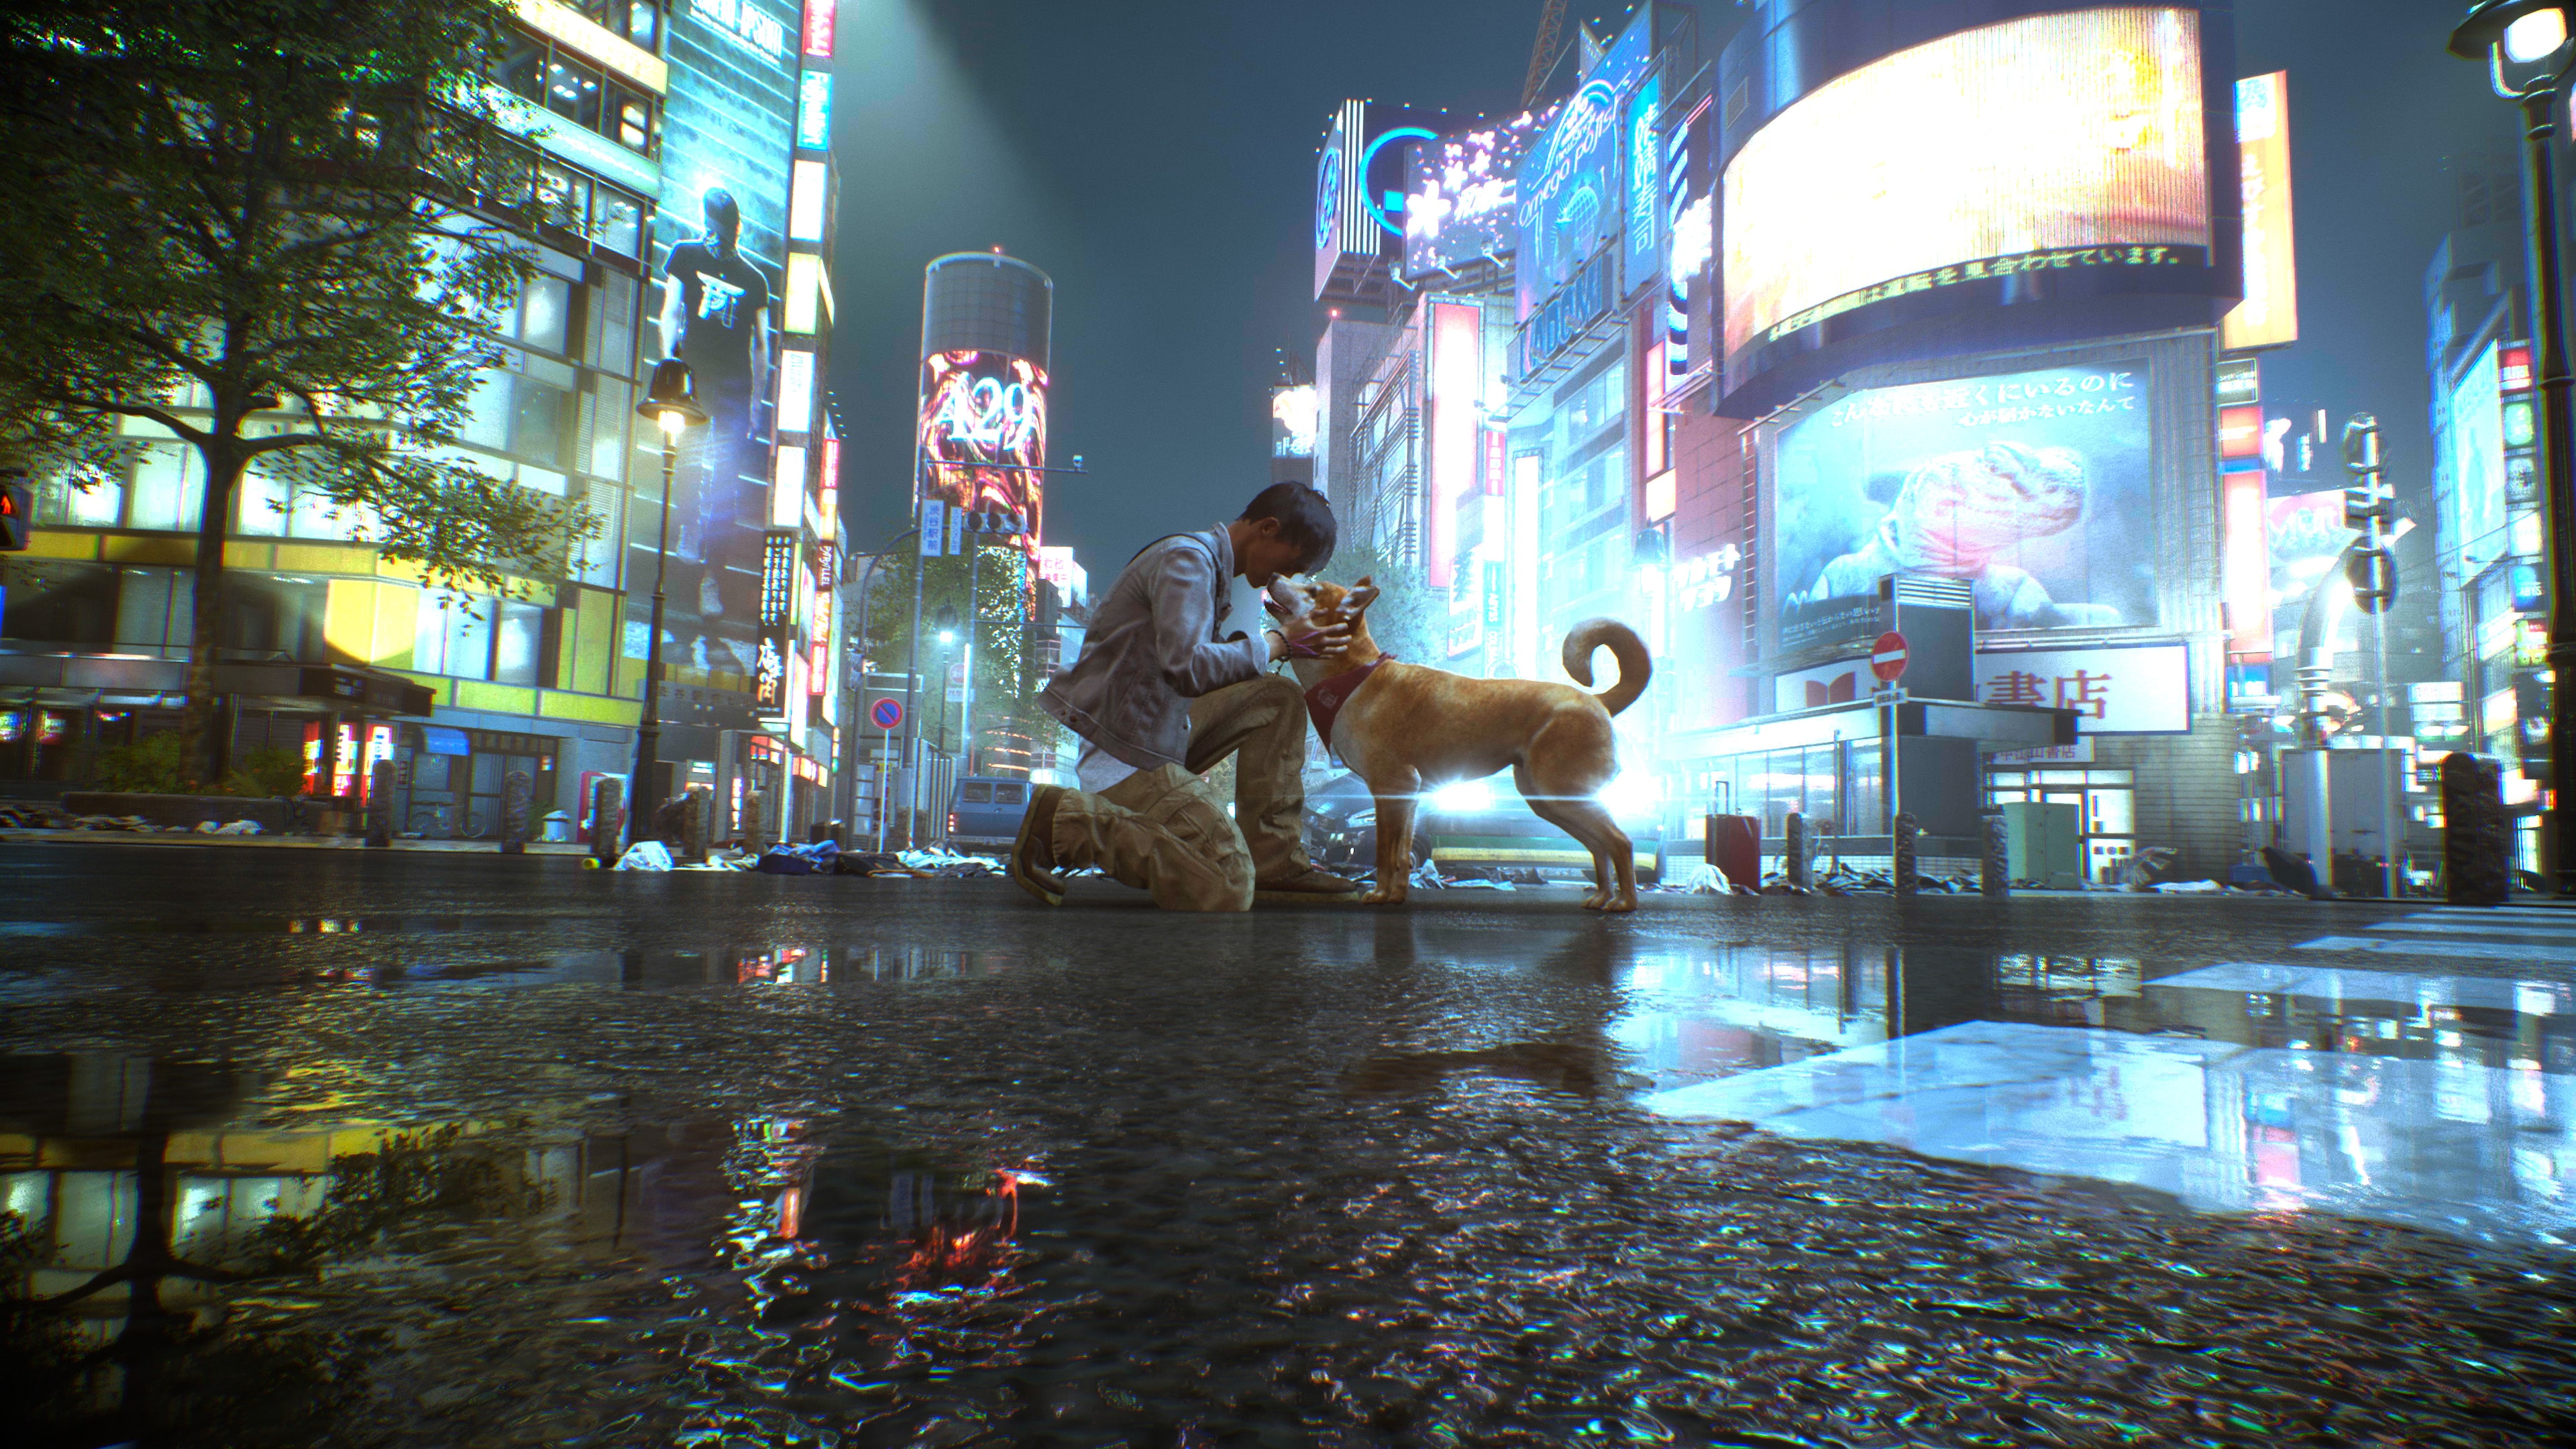 Jogo para PS5 Ghostwire: Tokyo - Sony - Info Store - Prod